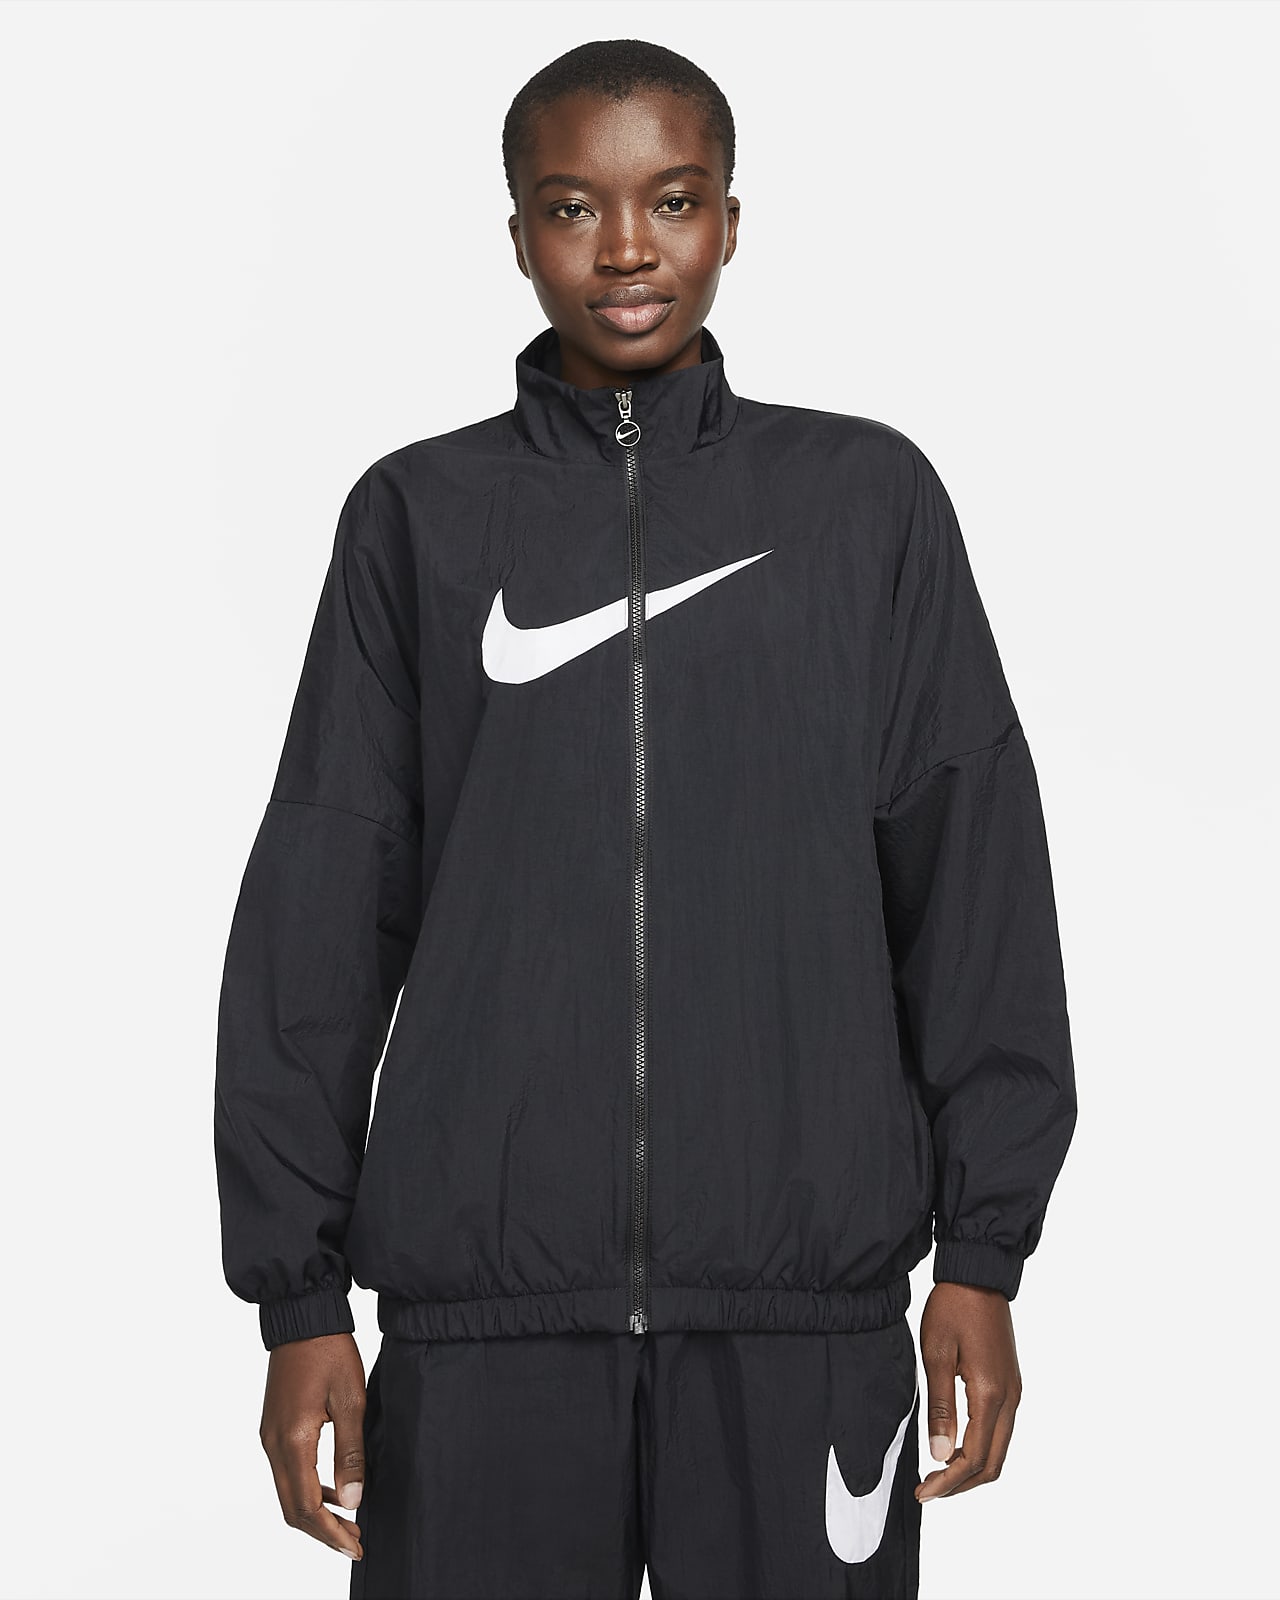 Vævet Nike Sportswear Essential-jakke til kvinder